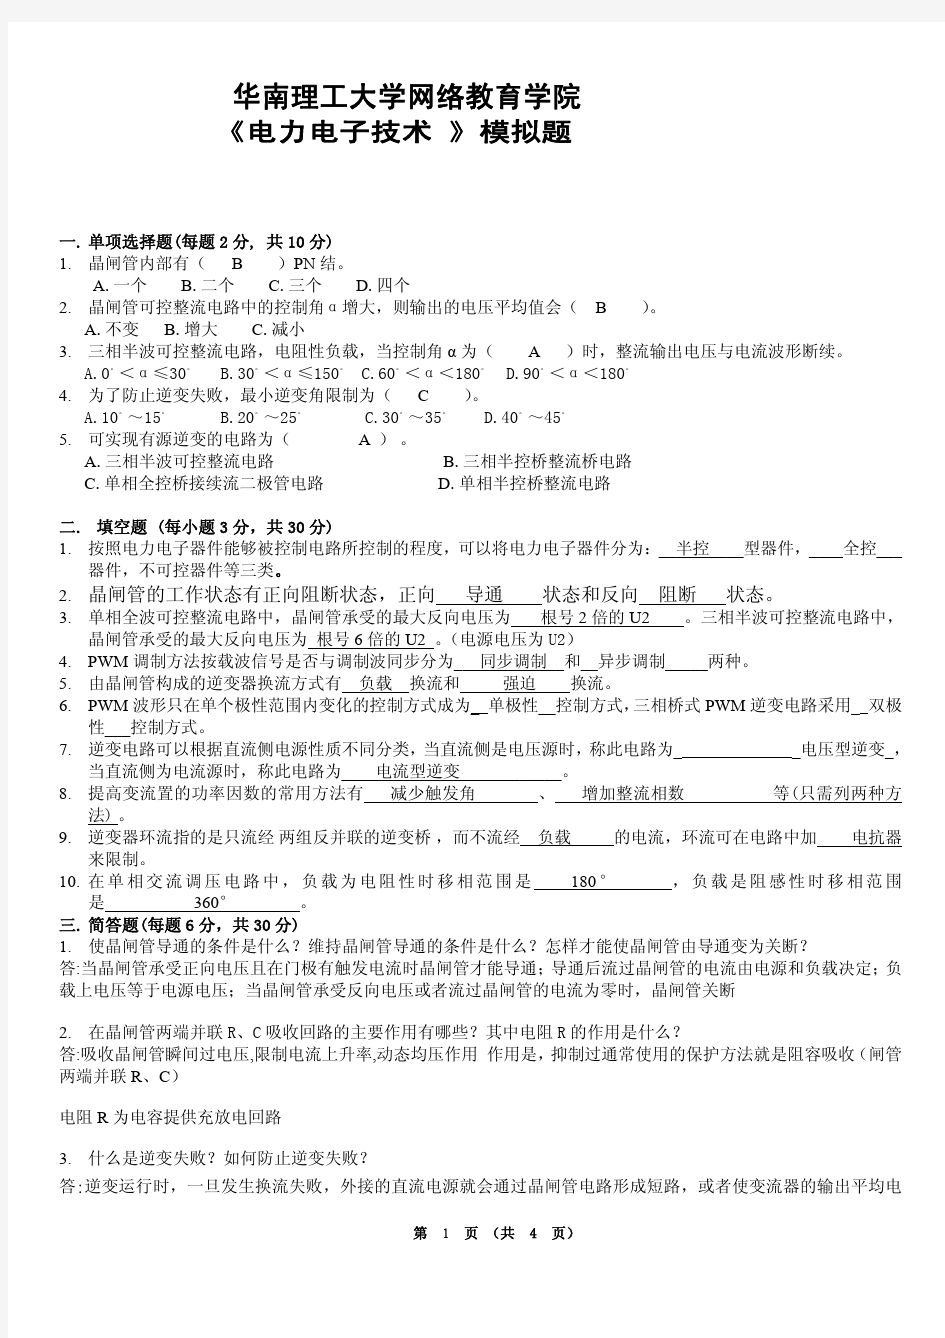 华南理工网络教育电力电子技术模拟题答案完整版